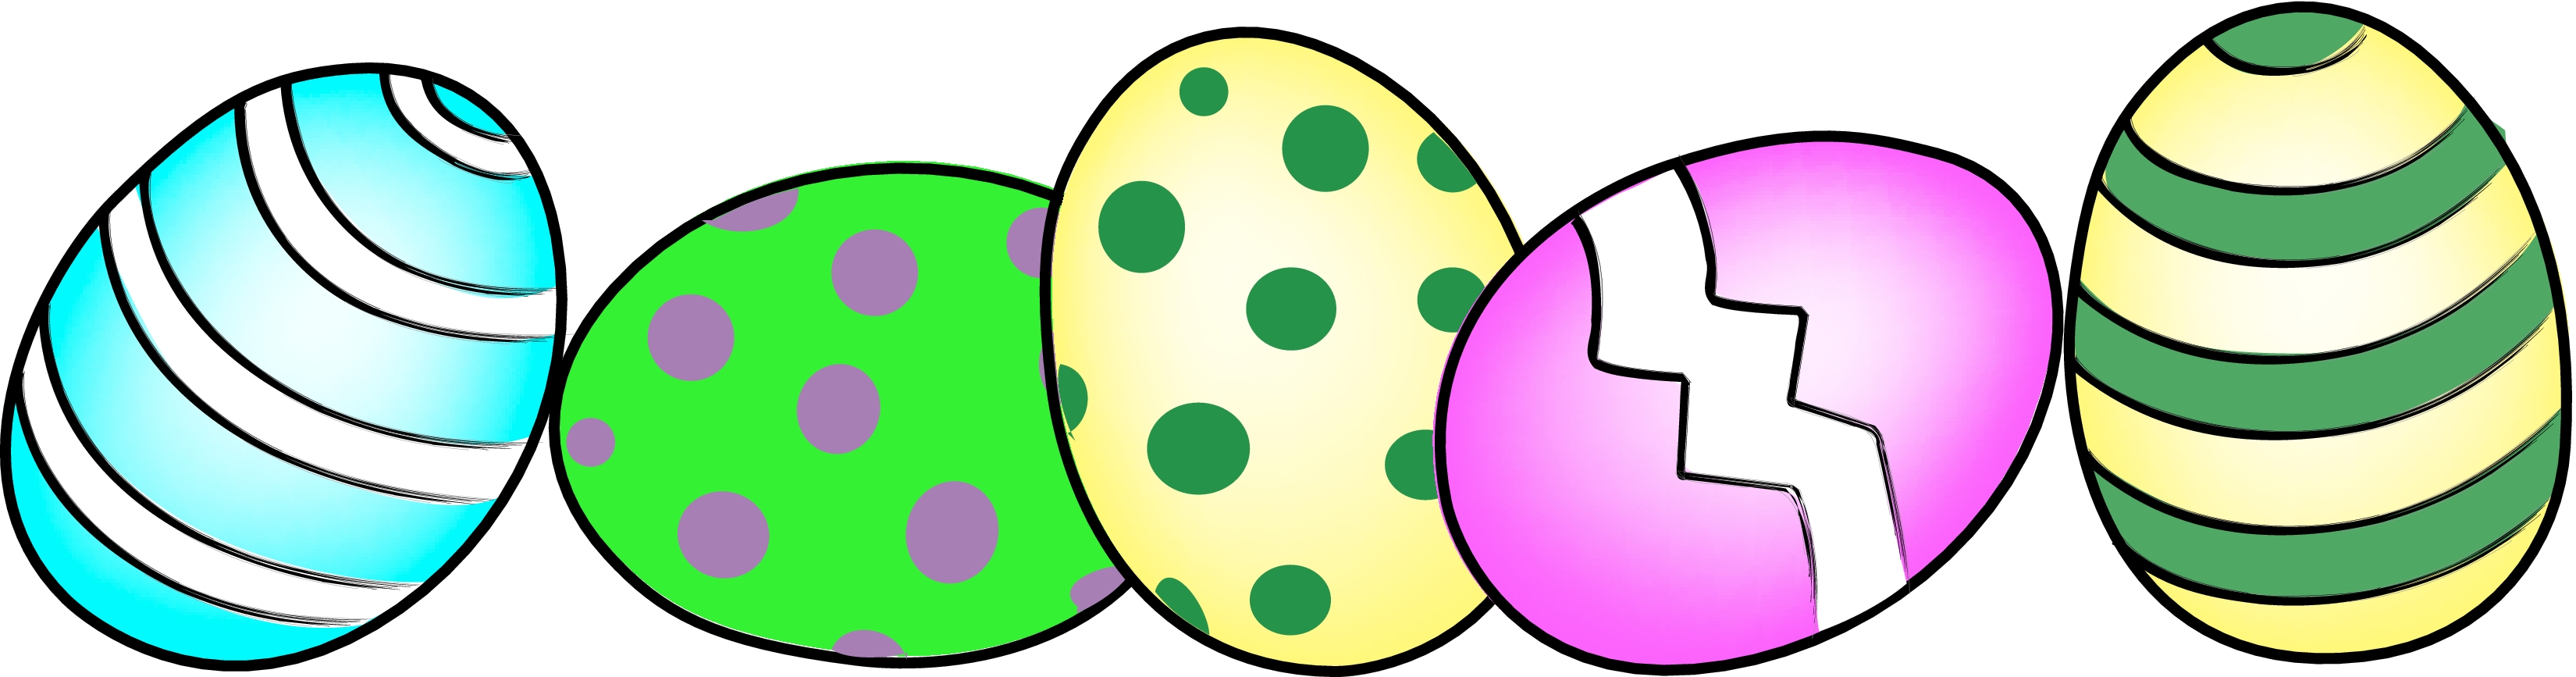 Easter Egg Border Clip Art